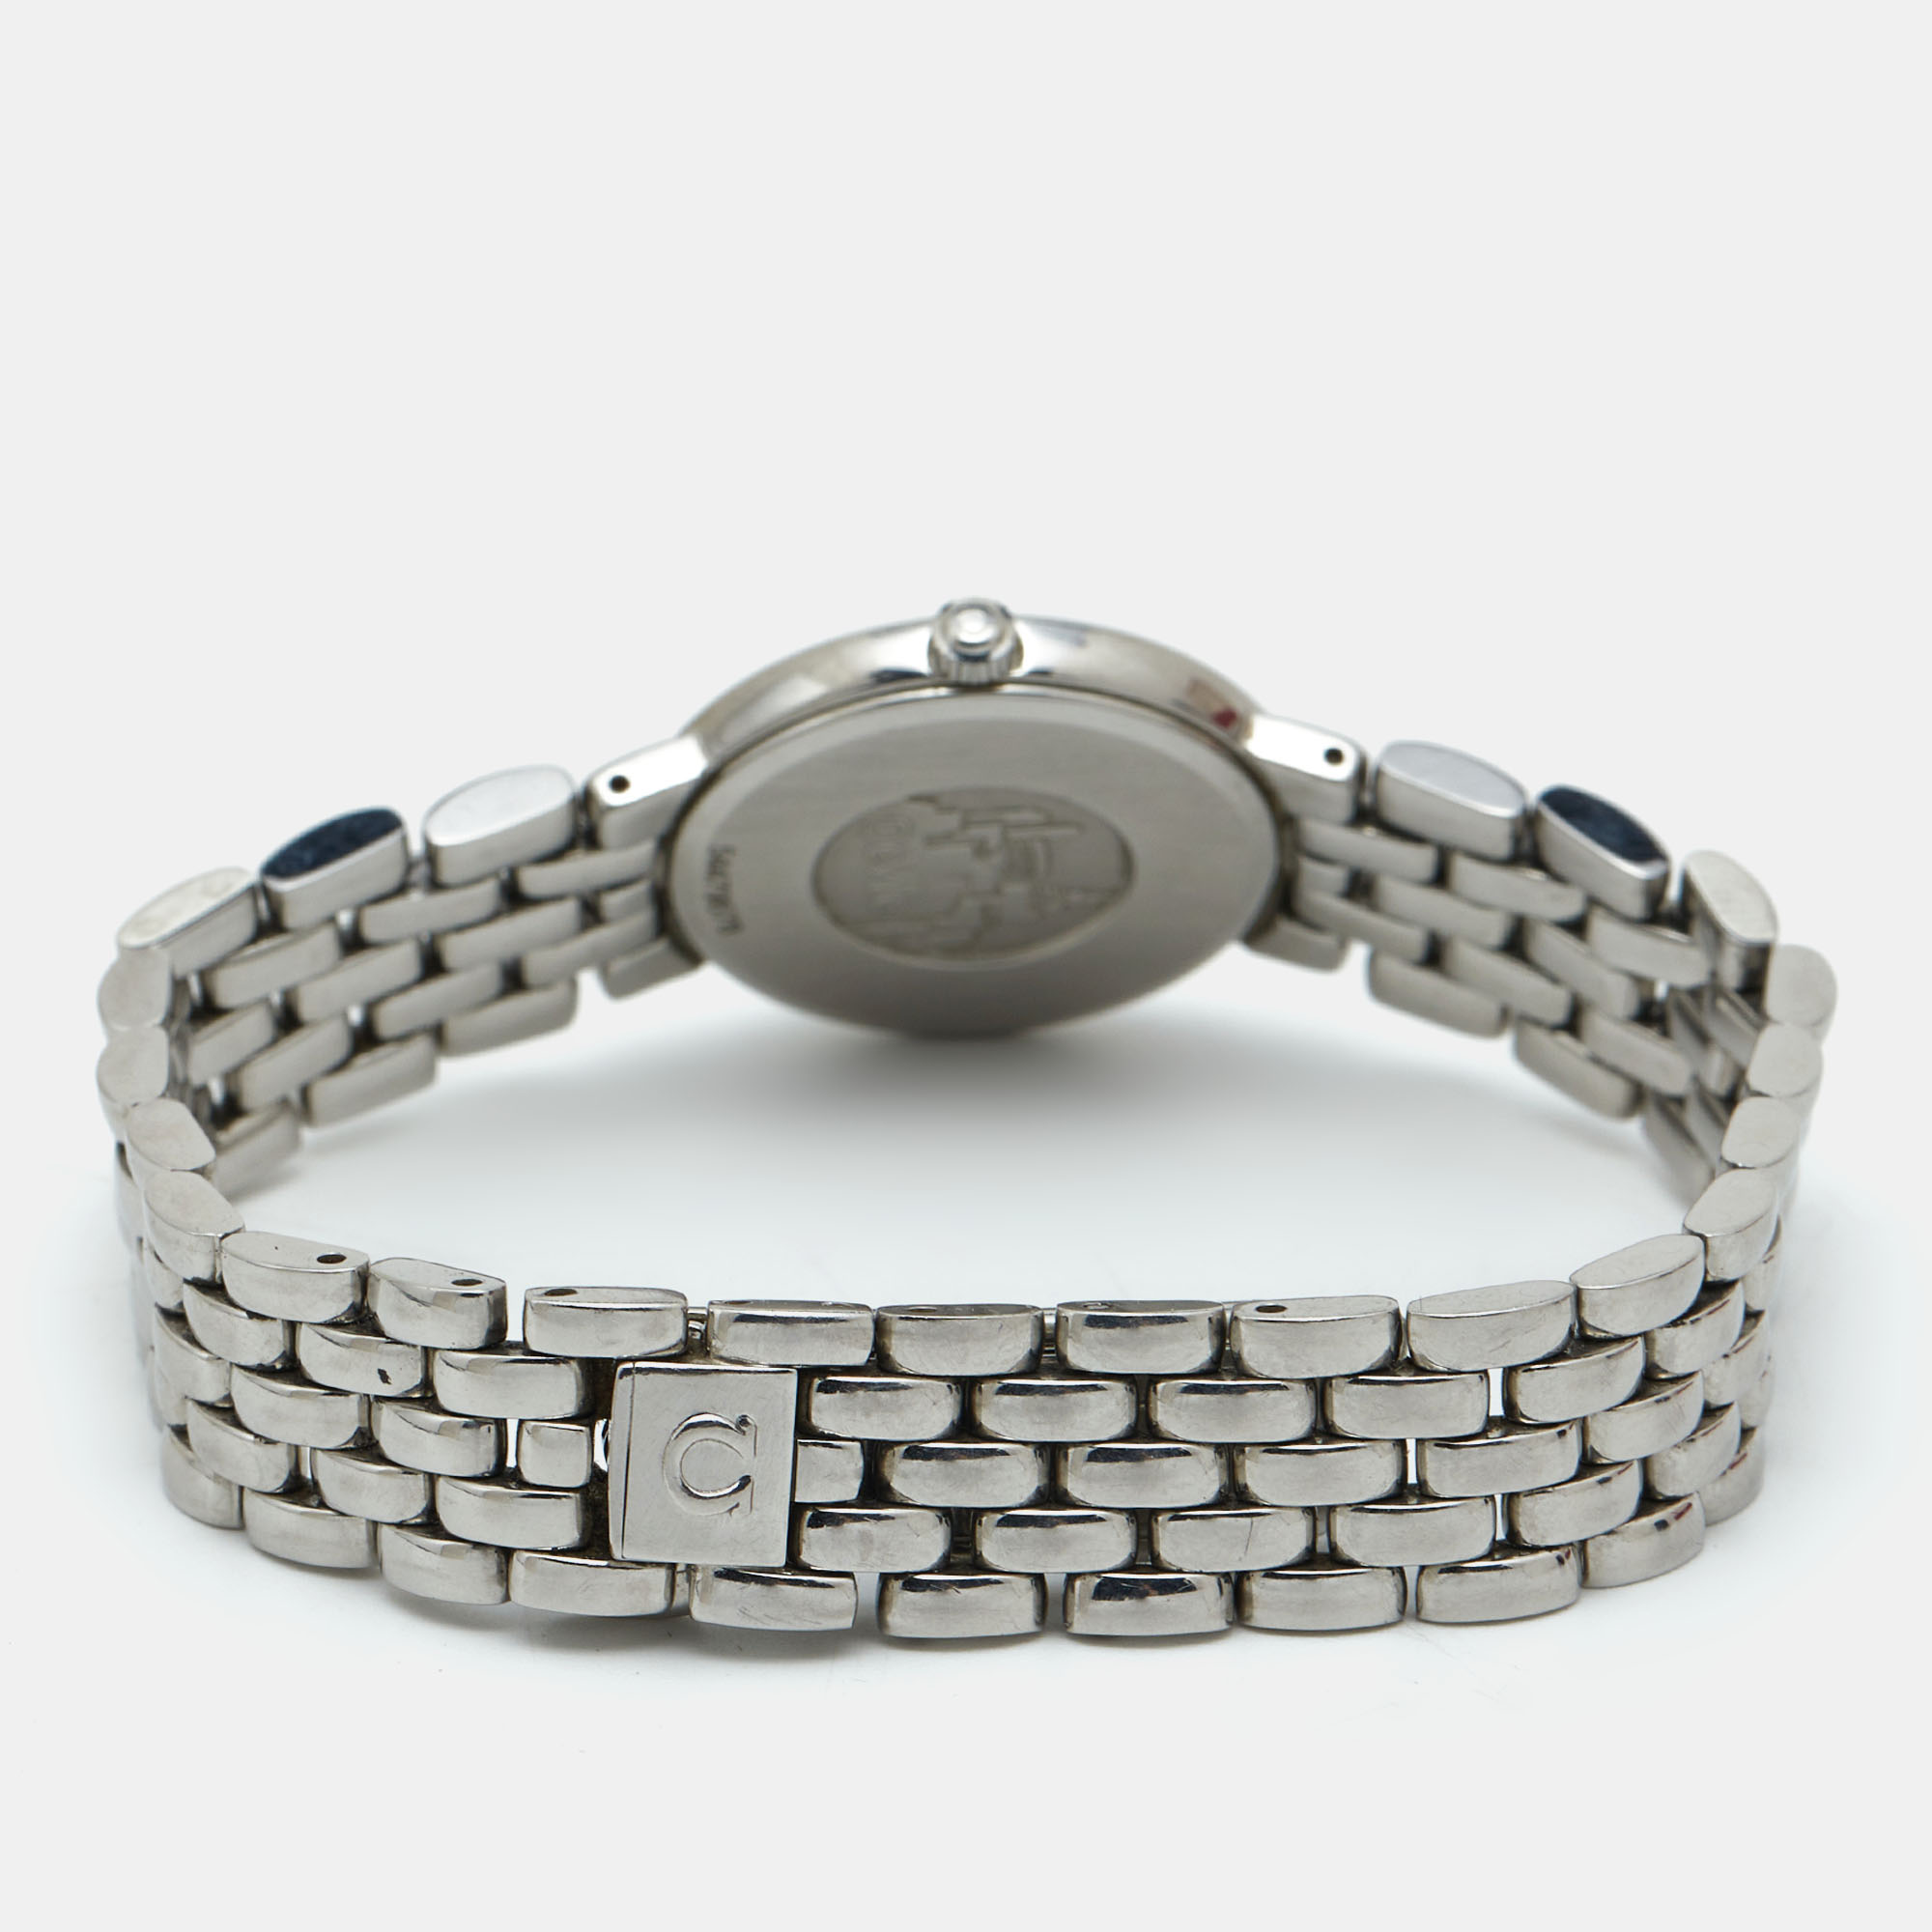 Omega Silver White Stainless Steel De Ville 795.1111 Women's Wristwatch 23 Mm